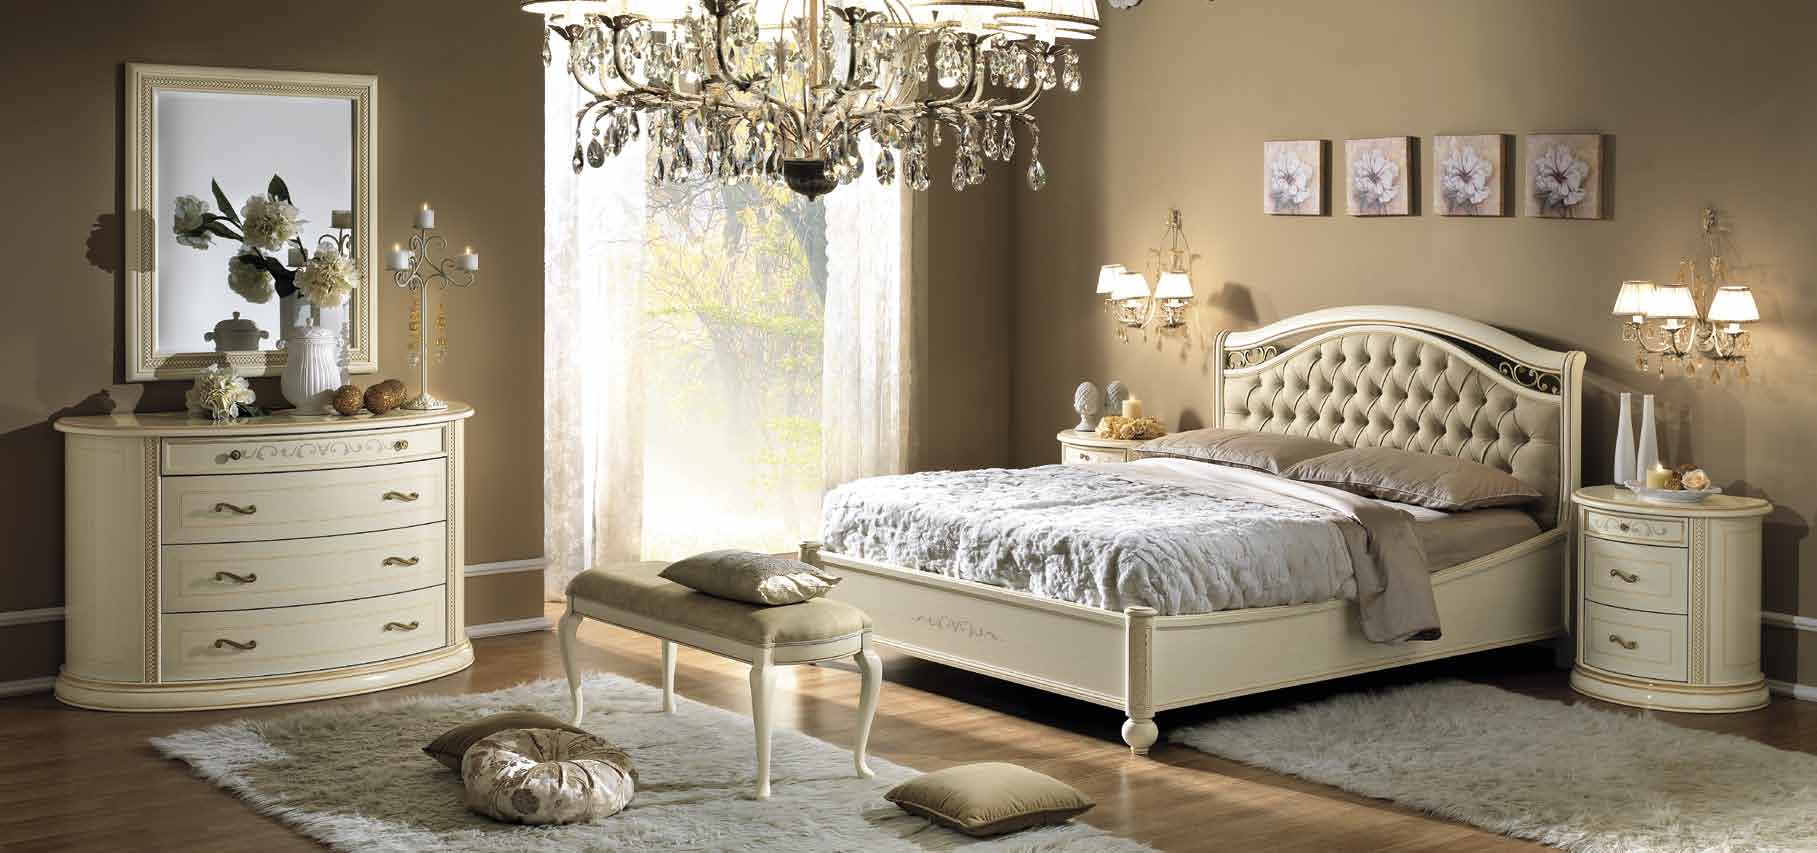 cream bedroom furniture ideas photo - 4